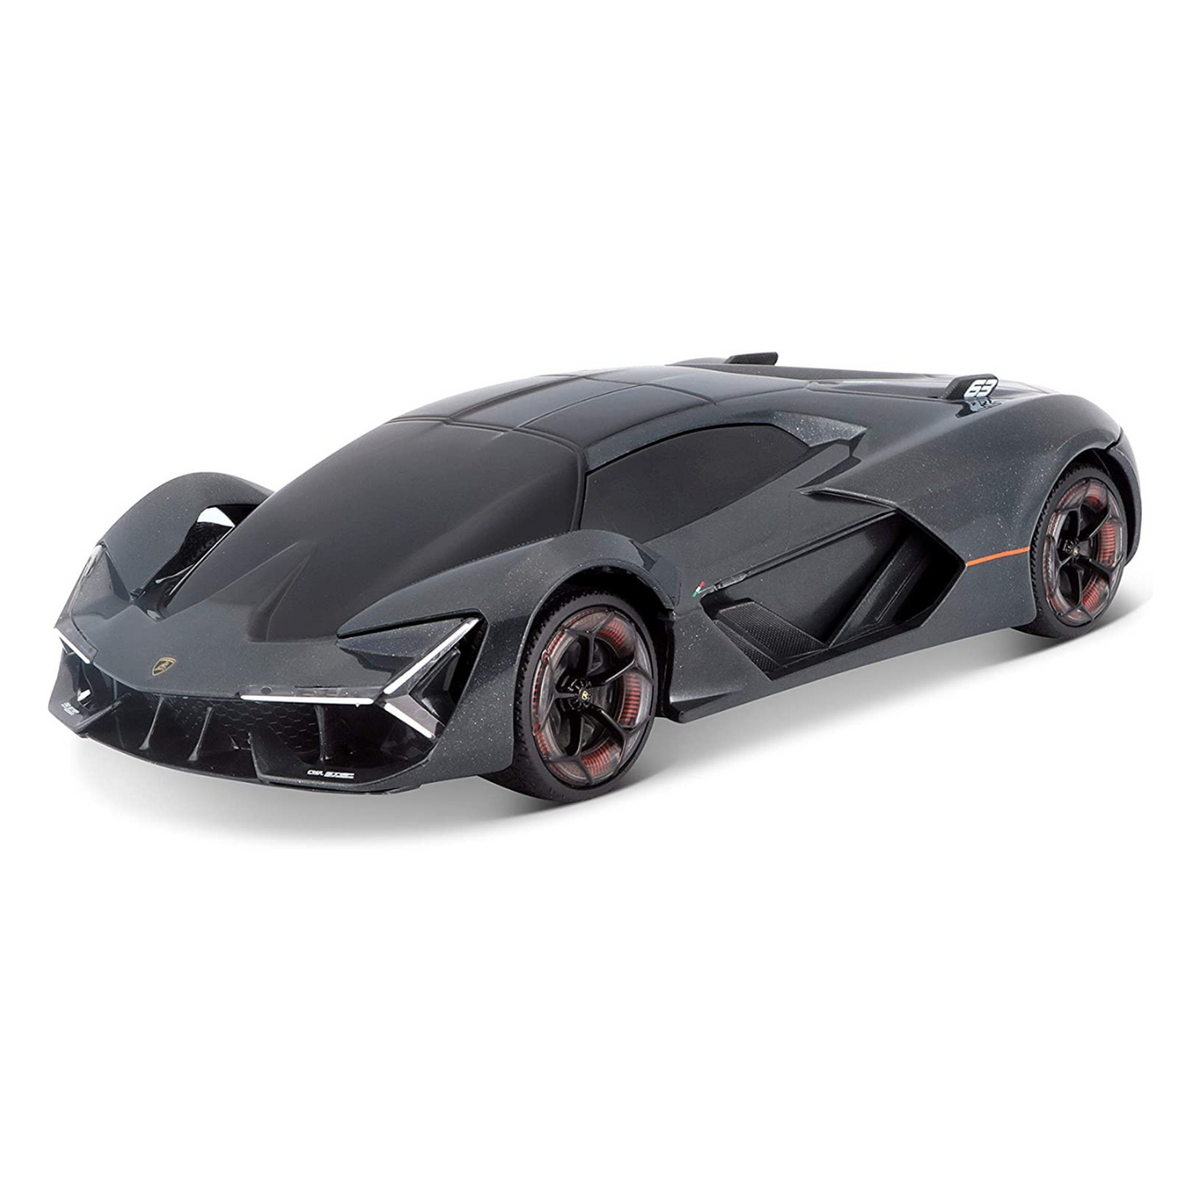 Learn More About the Lamborghini Terzo Millennio Concept